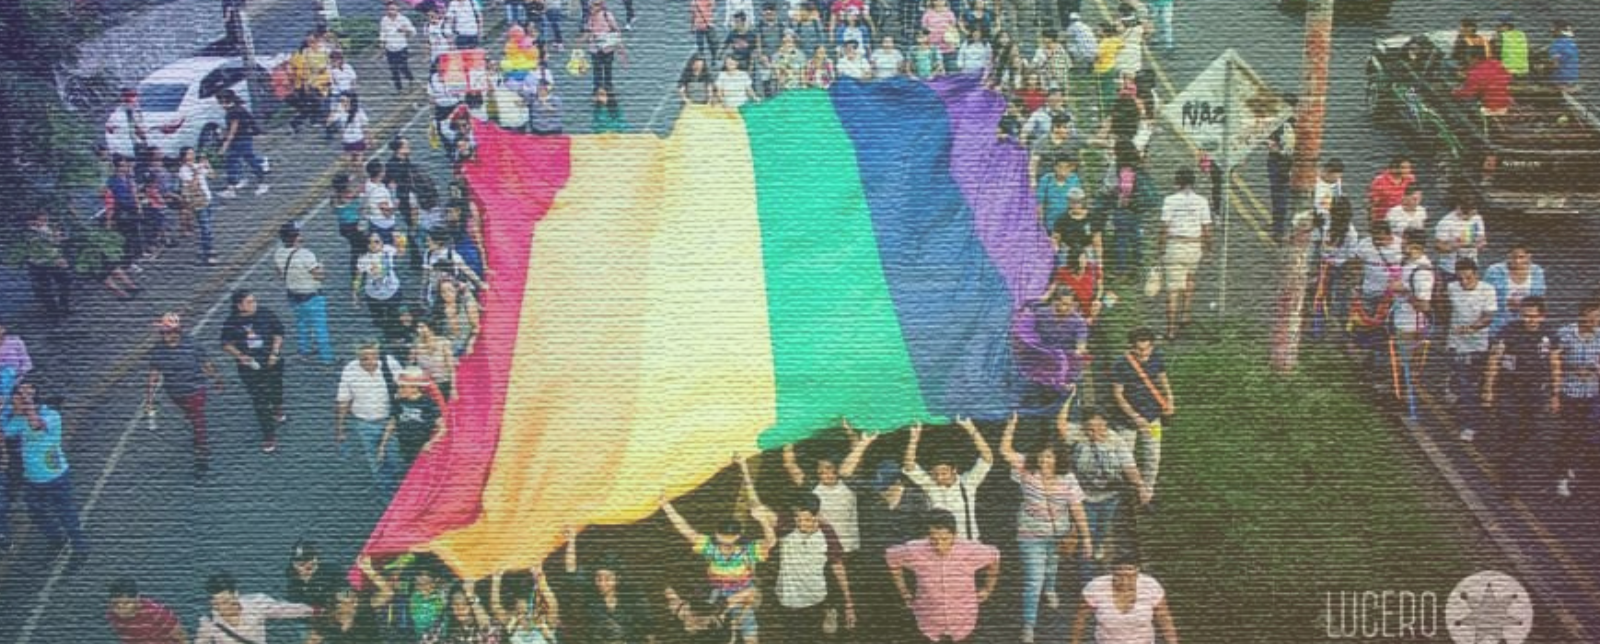 Lesbianas, homosexuales, bisexuales y trans: Por una Nicaragua para todes